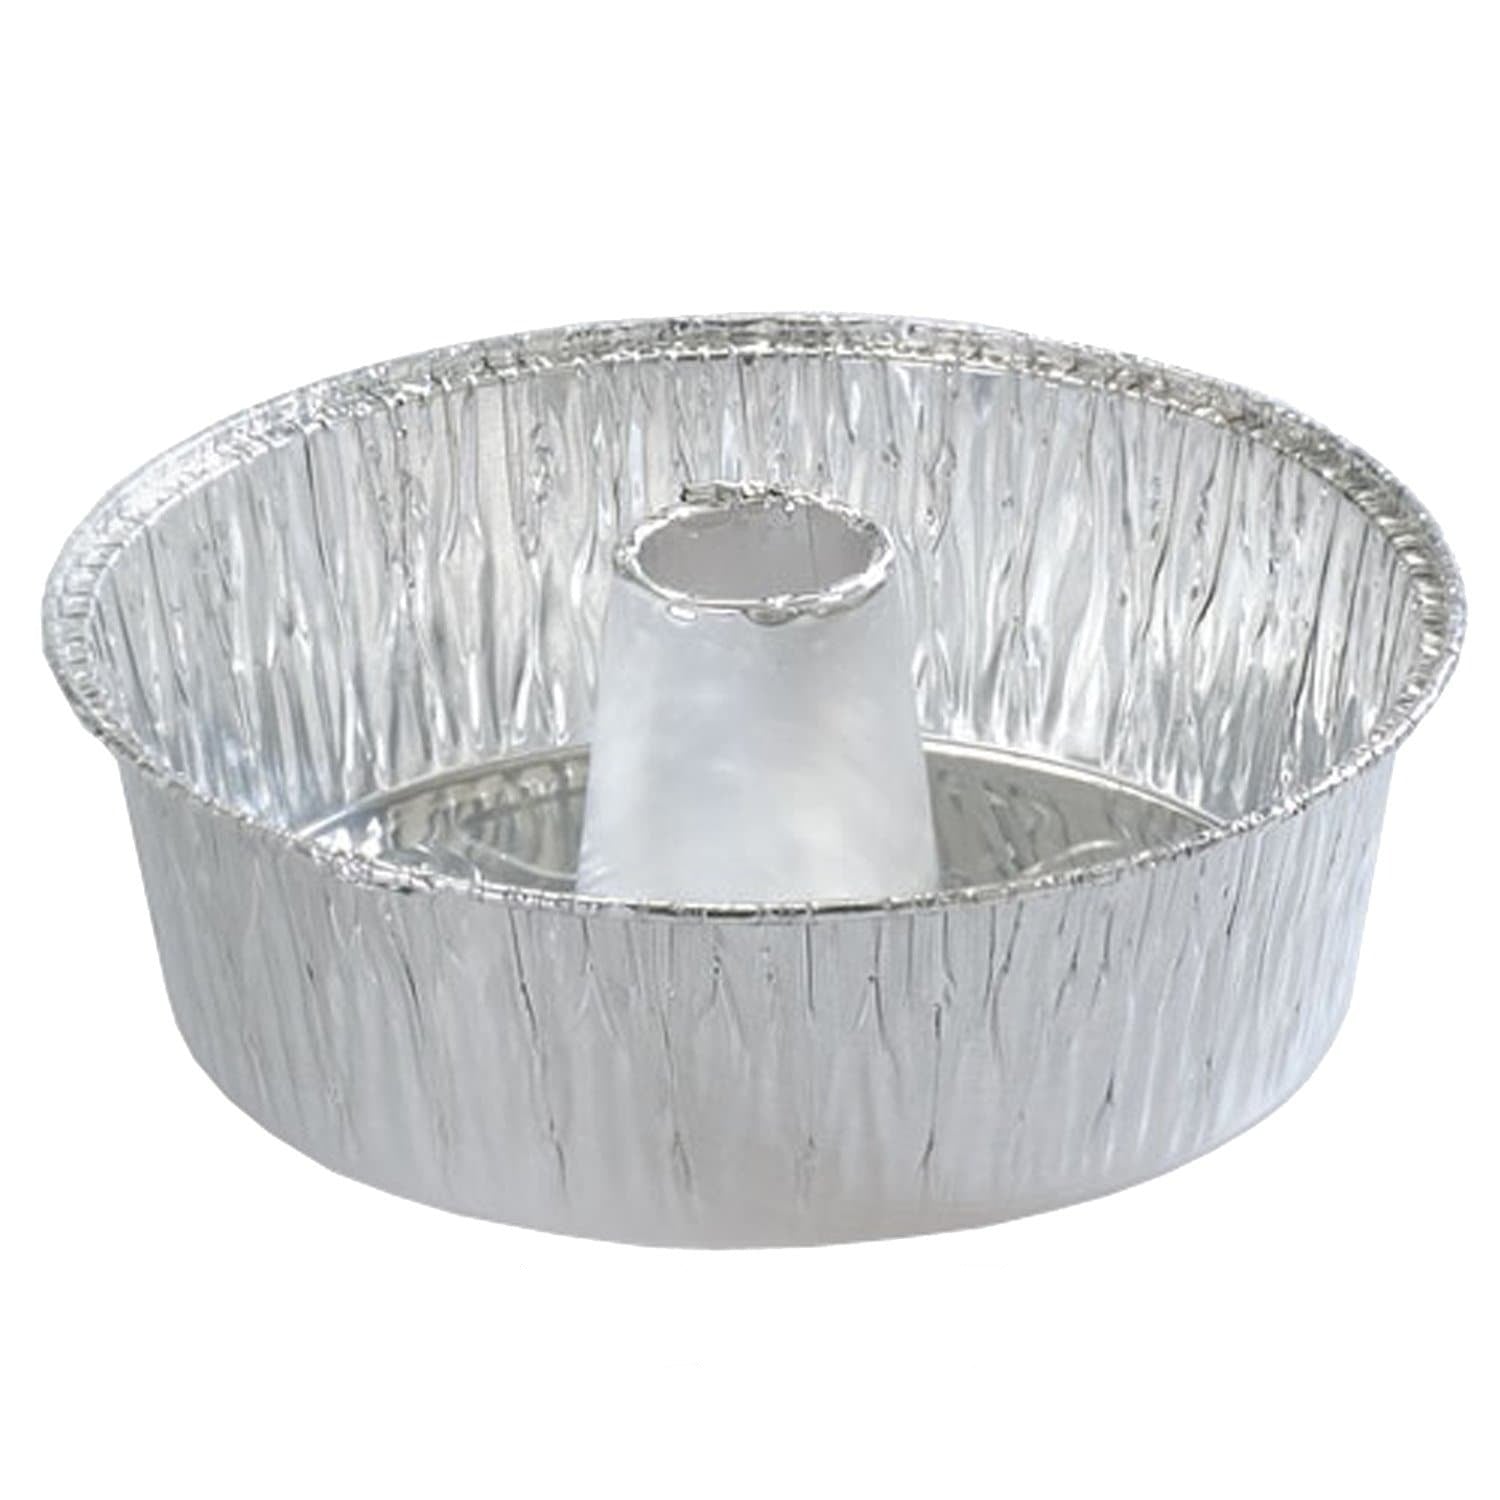 Reusable Aluminum Foil Pan Angel Tube Pan Food Cake Pan For Baking